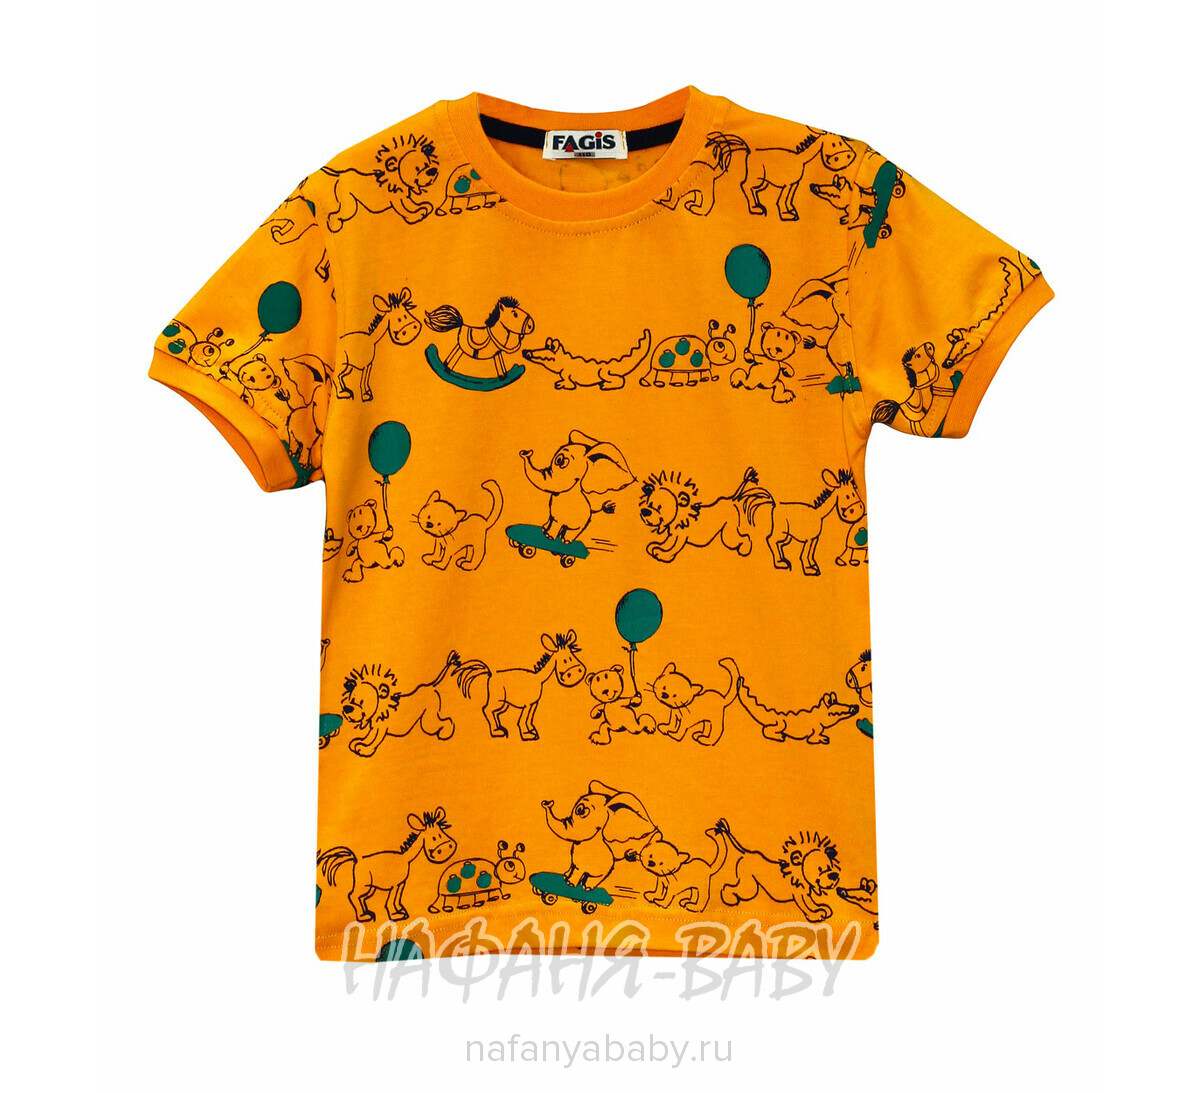 Детская футболка FAGIS, купить в интернет магазине Нафаня. арт: 6712.